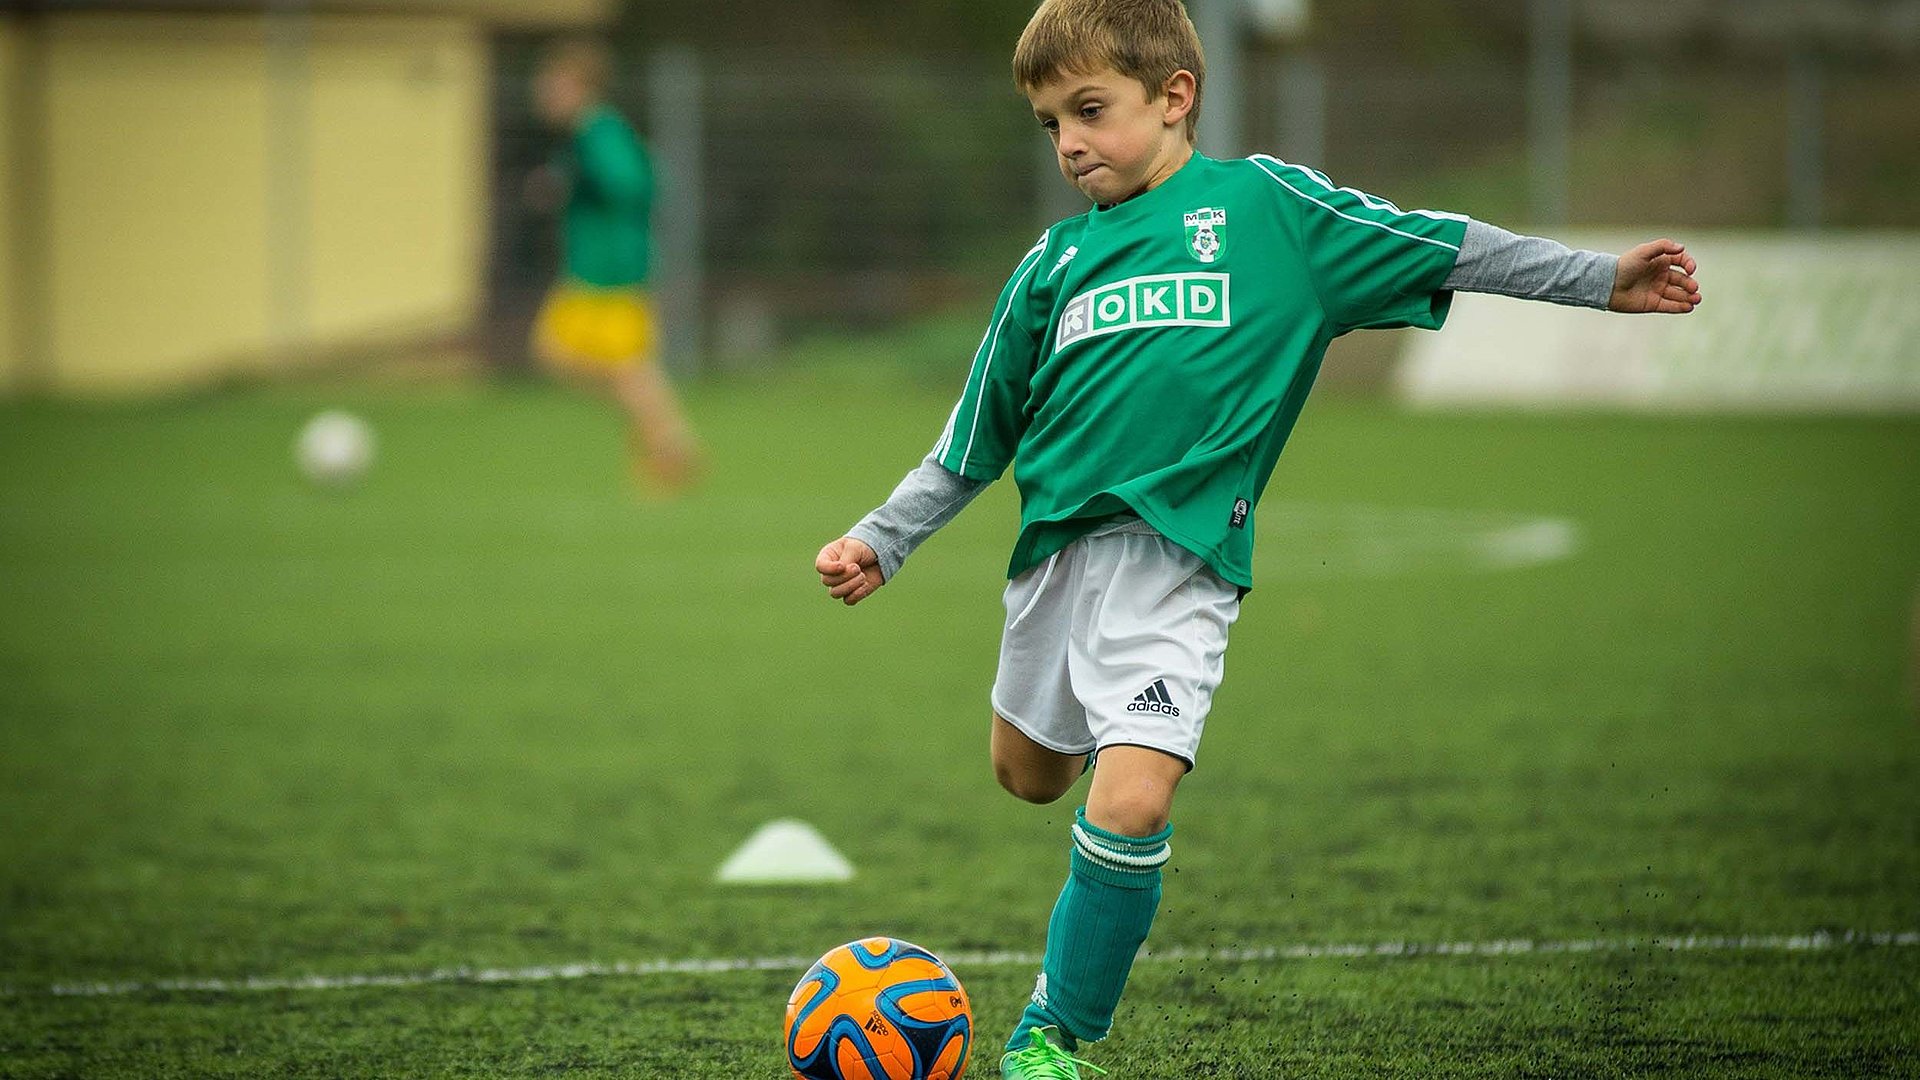 Aktivurlaub Outdoor im Fränkischen Seenland - kleiner Junge in Fußballausrüstung setzt zum Schuss an 